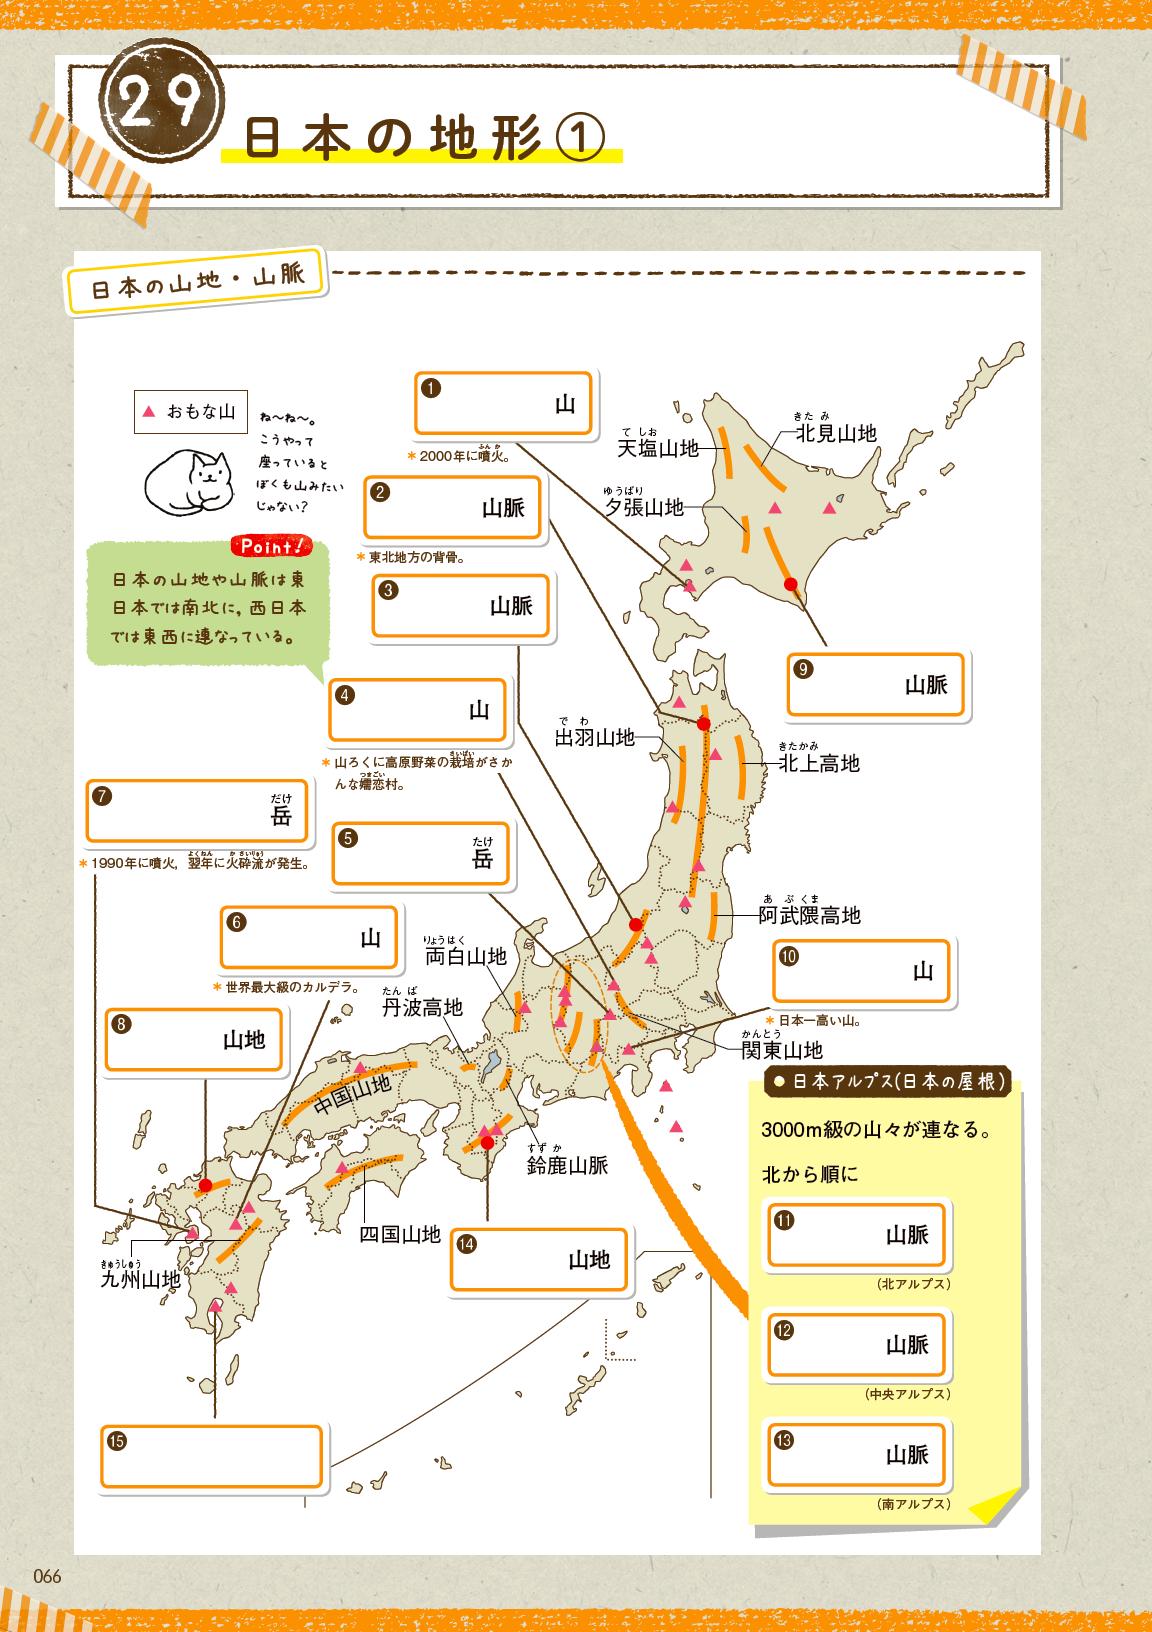 学研のドリル 参考書 今日は 山の日 日本の山地 山脈の名前 どのくらい知っていますか 白地図書きこみノートで確認してみよう 日本でいちばん高い山は 東北地方の背骨ともいわれる山脈は T Co Cei6smurz2 T Co